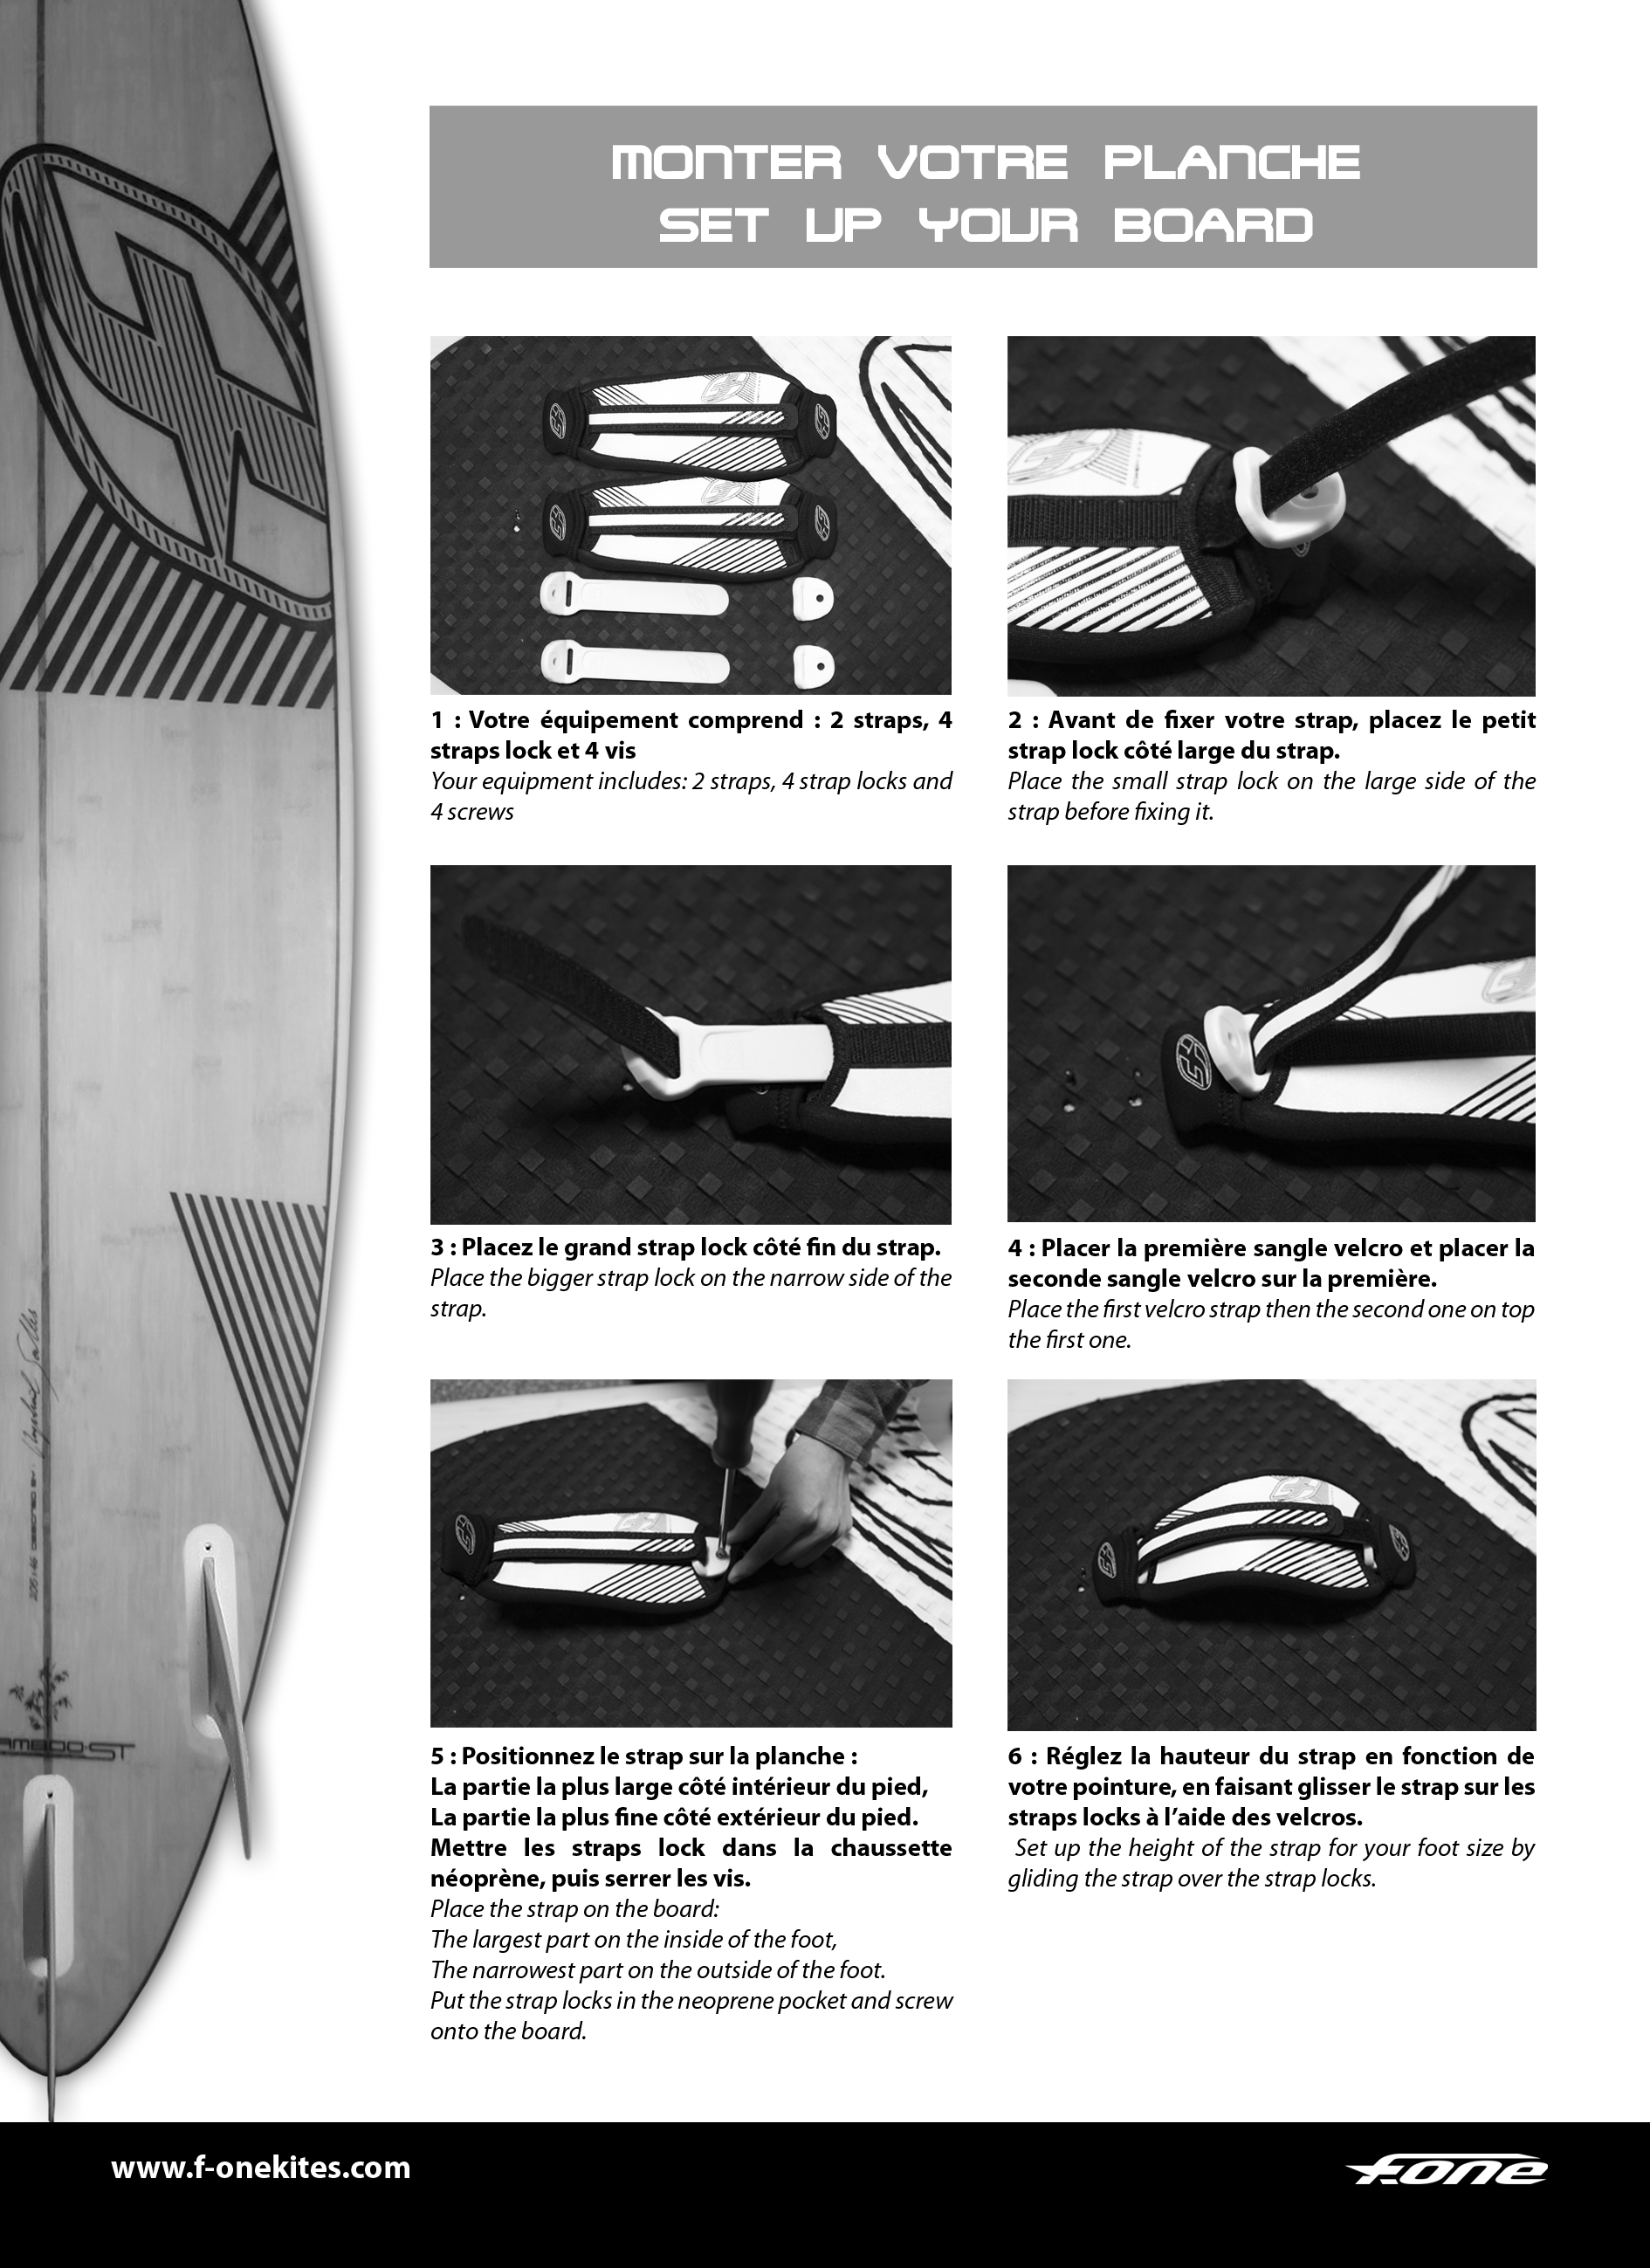 How to setup adjustable surf straps